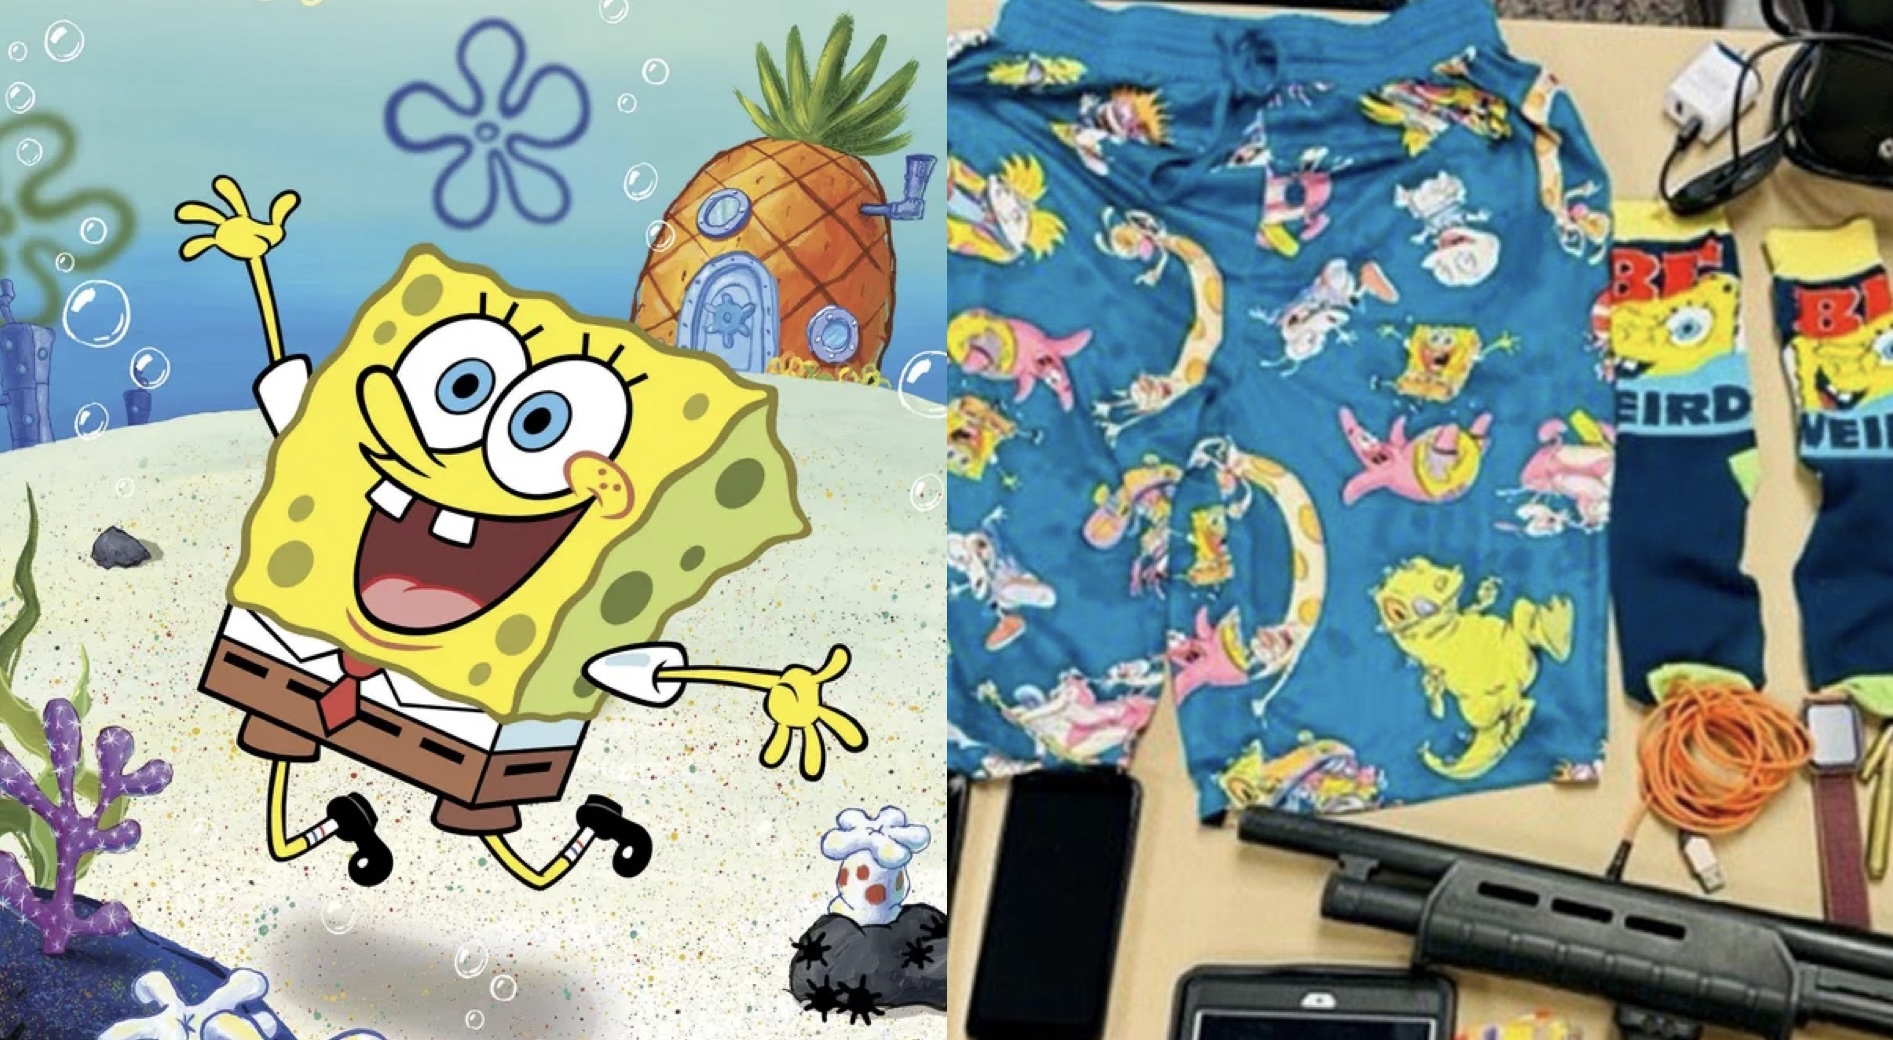 ’Dashuria’ për SpongeBob fundos hajdutin serial, çorapet dhe pantallonat e shkurtra e nxjerrin zbuluar